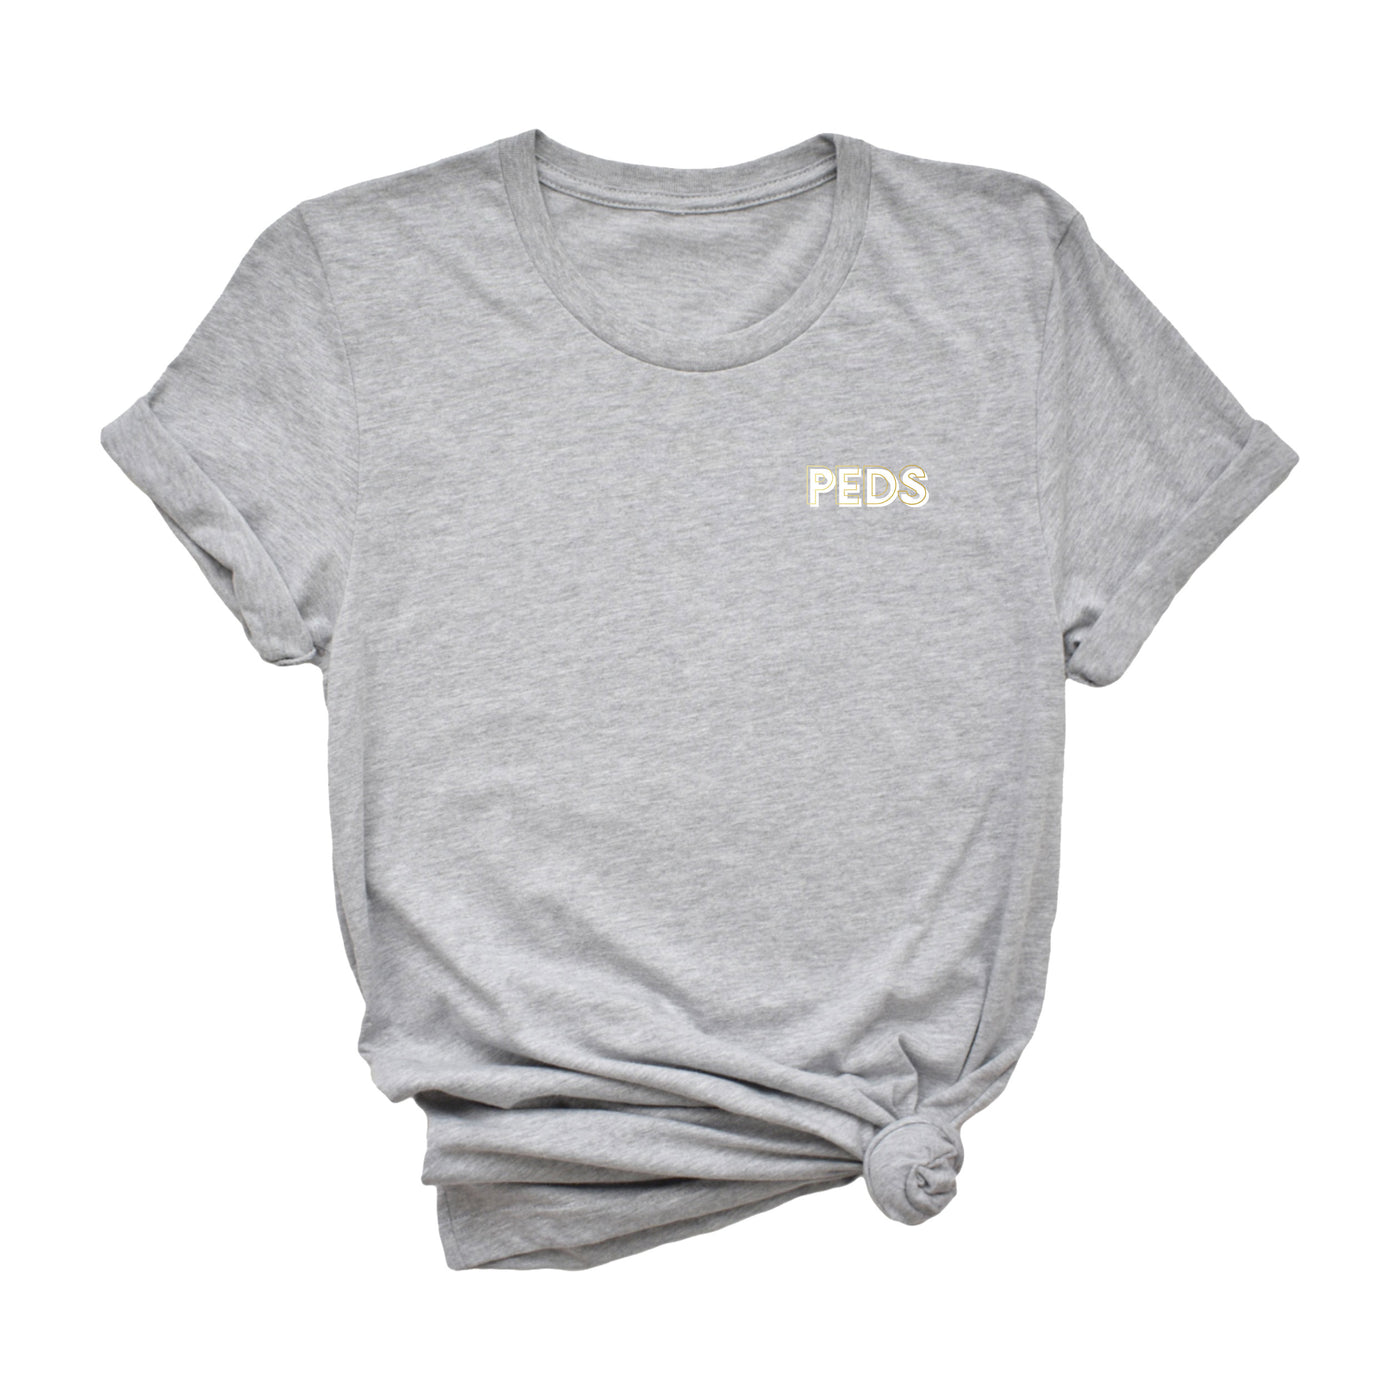 Peds Creds - Shirt